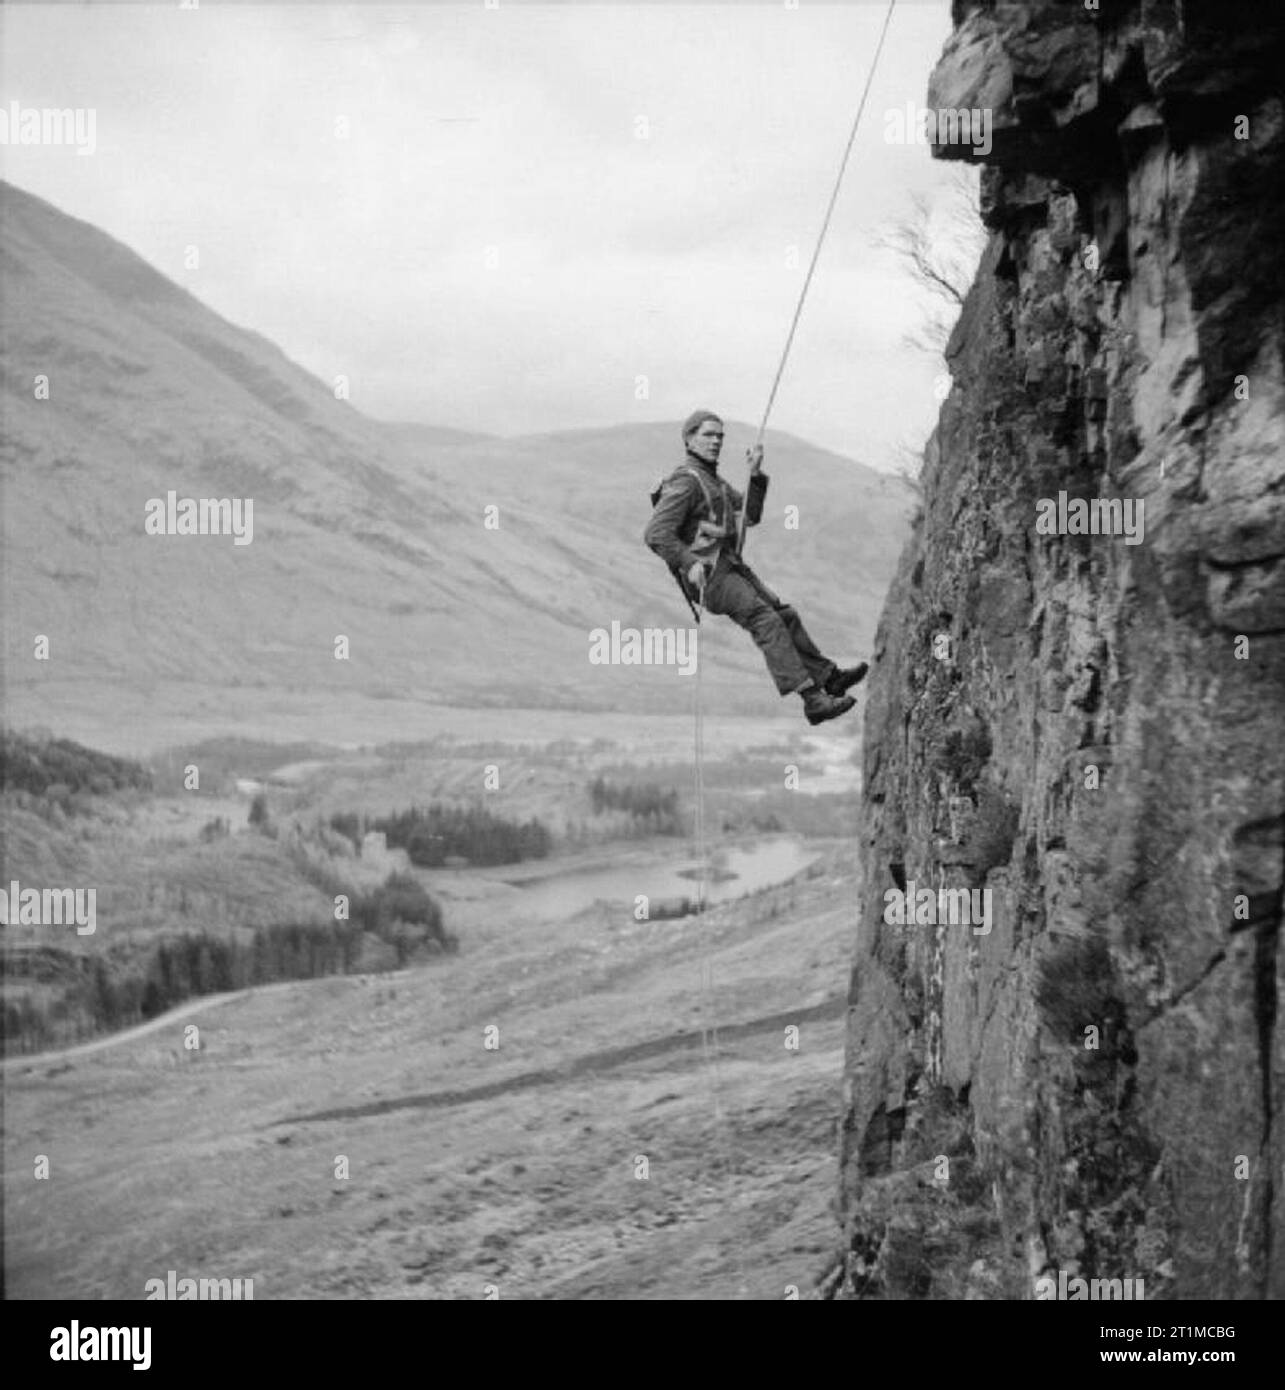 L'Armée britannique au Royaume-Uni 1939-1945 membre du commando n° 1 descente en rappel vers le bas d'une paroi rocheuse au cours de l'entraînement à Glencoe, en Écosse. Banque D'Images